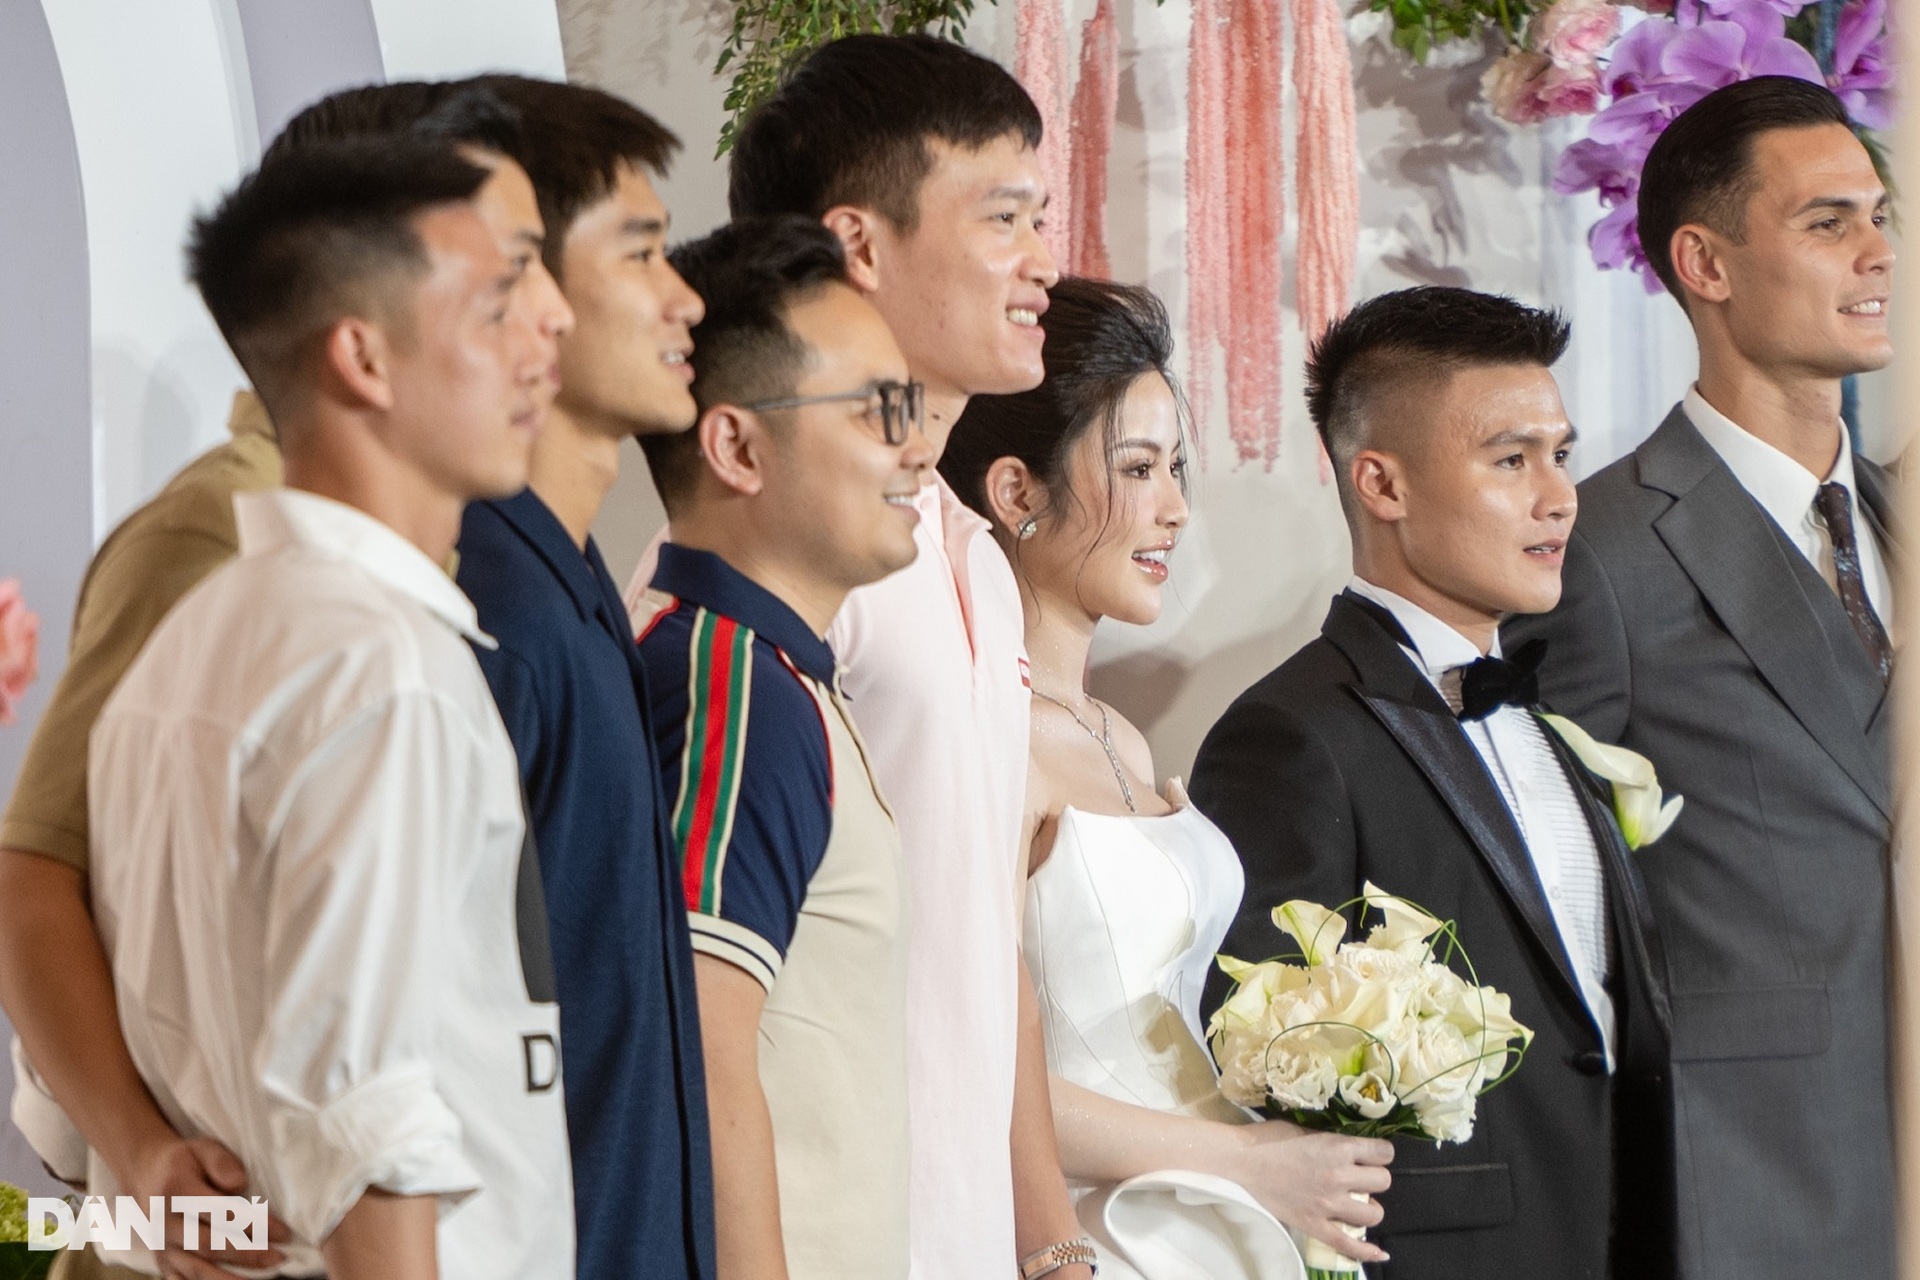 Đám cưới Quang Hải: Cô dâu - chú rể bất ngờ thông báo có em bé - 14